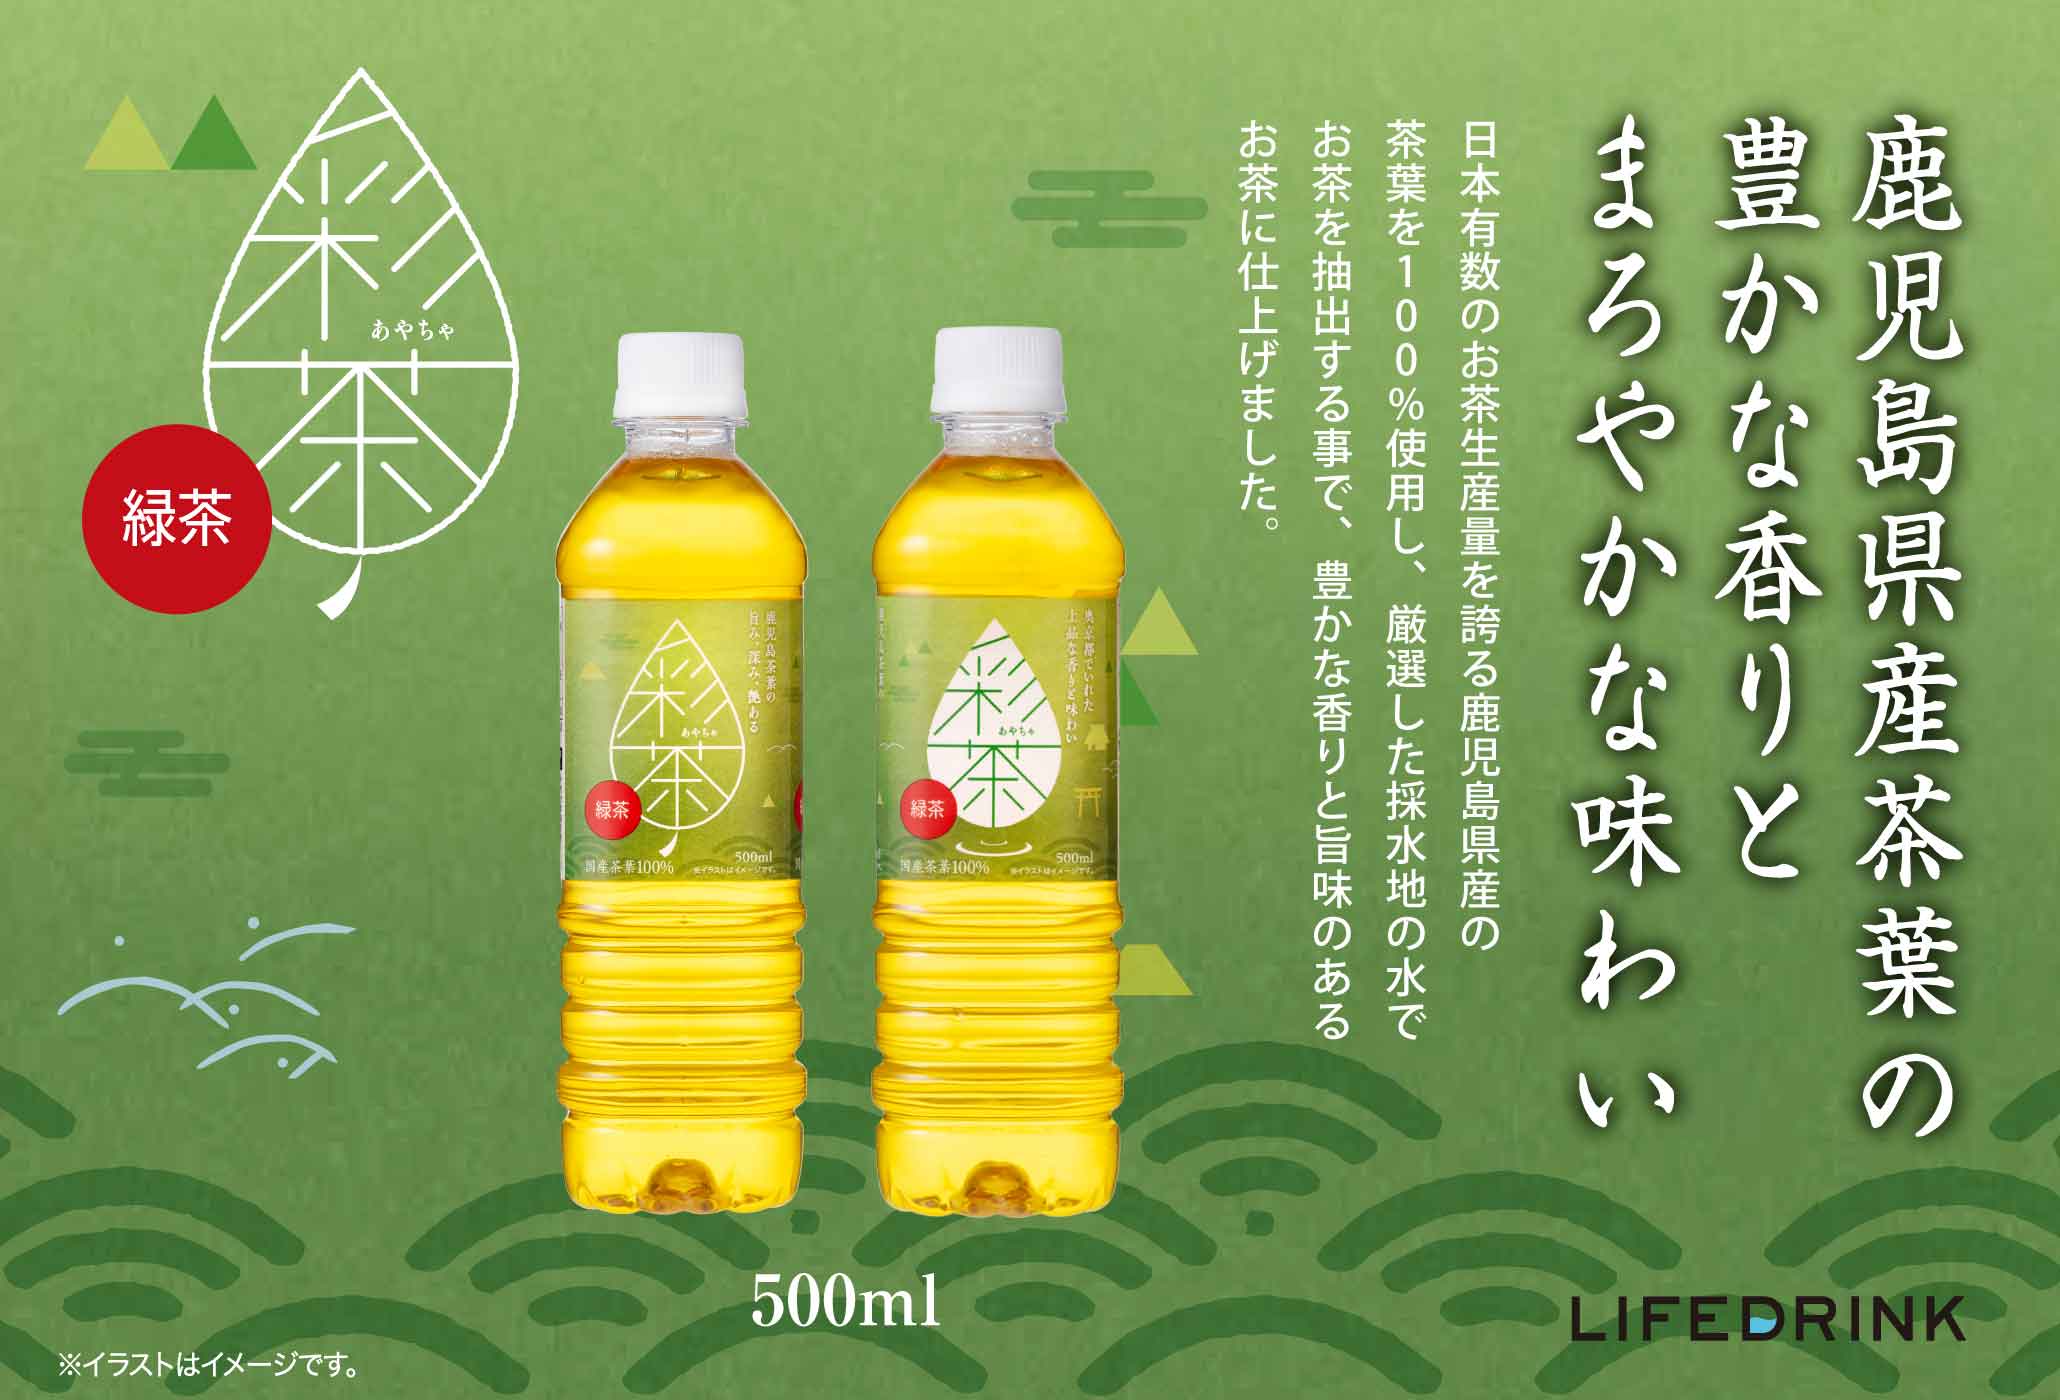 日本有数のお茶生産量を誇る鹿児島県産の茶葉を 100% 使用し、厳選した採水地の水でお茶を抽出する事で、豊かな香りと旨味のあるお茶に仕上げました。緑茶「彩茶」